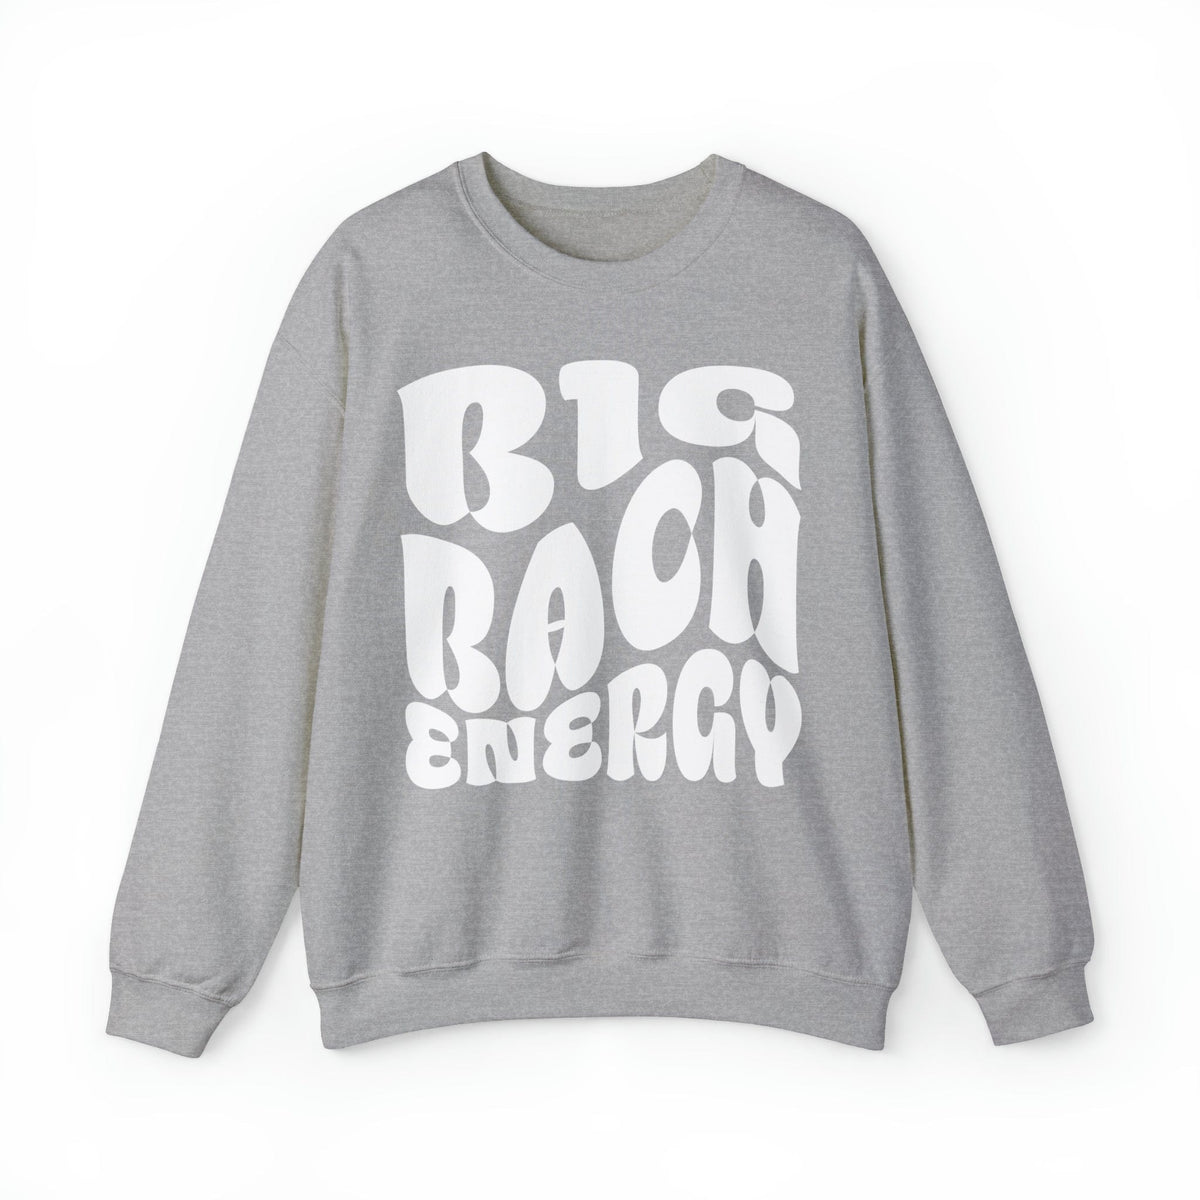 Big Bach Energy Crewneck Bridal Sweatshirt Sweatshirt TheFringeCultureCollective